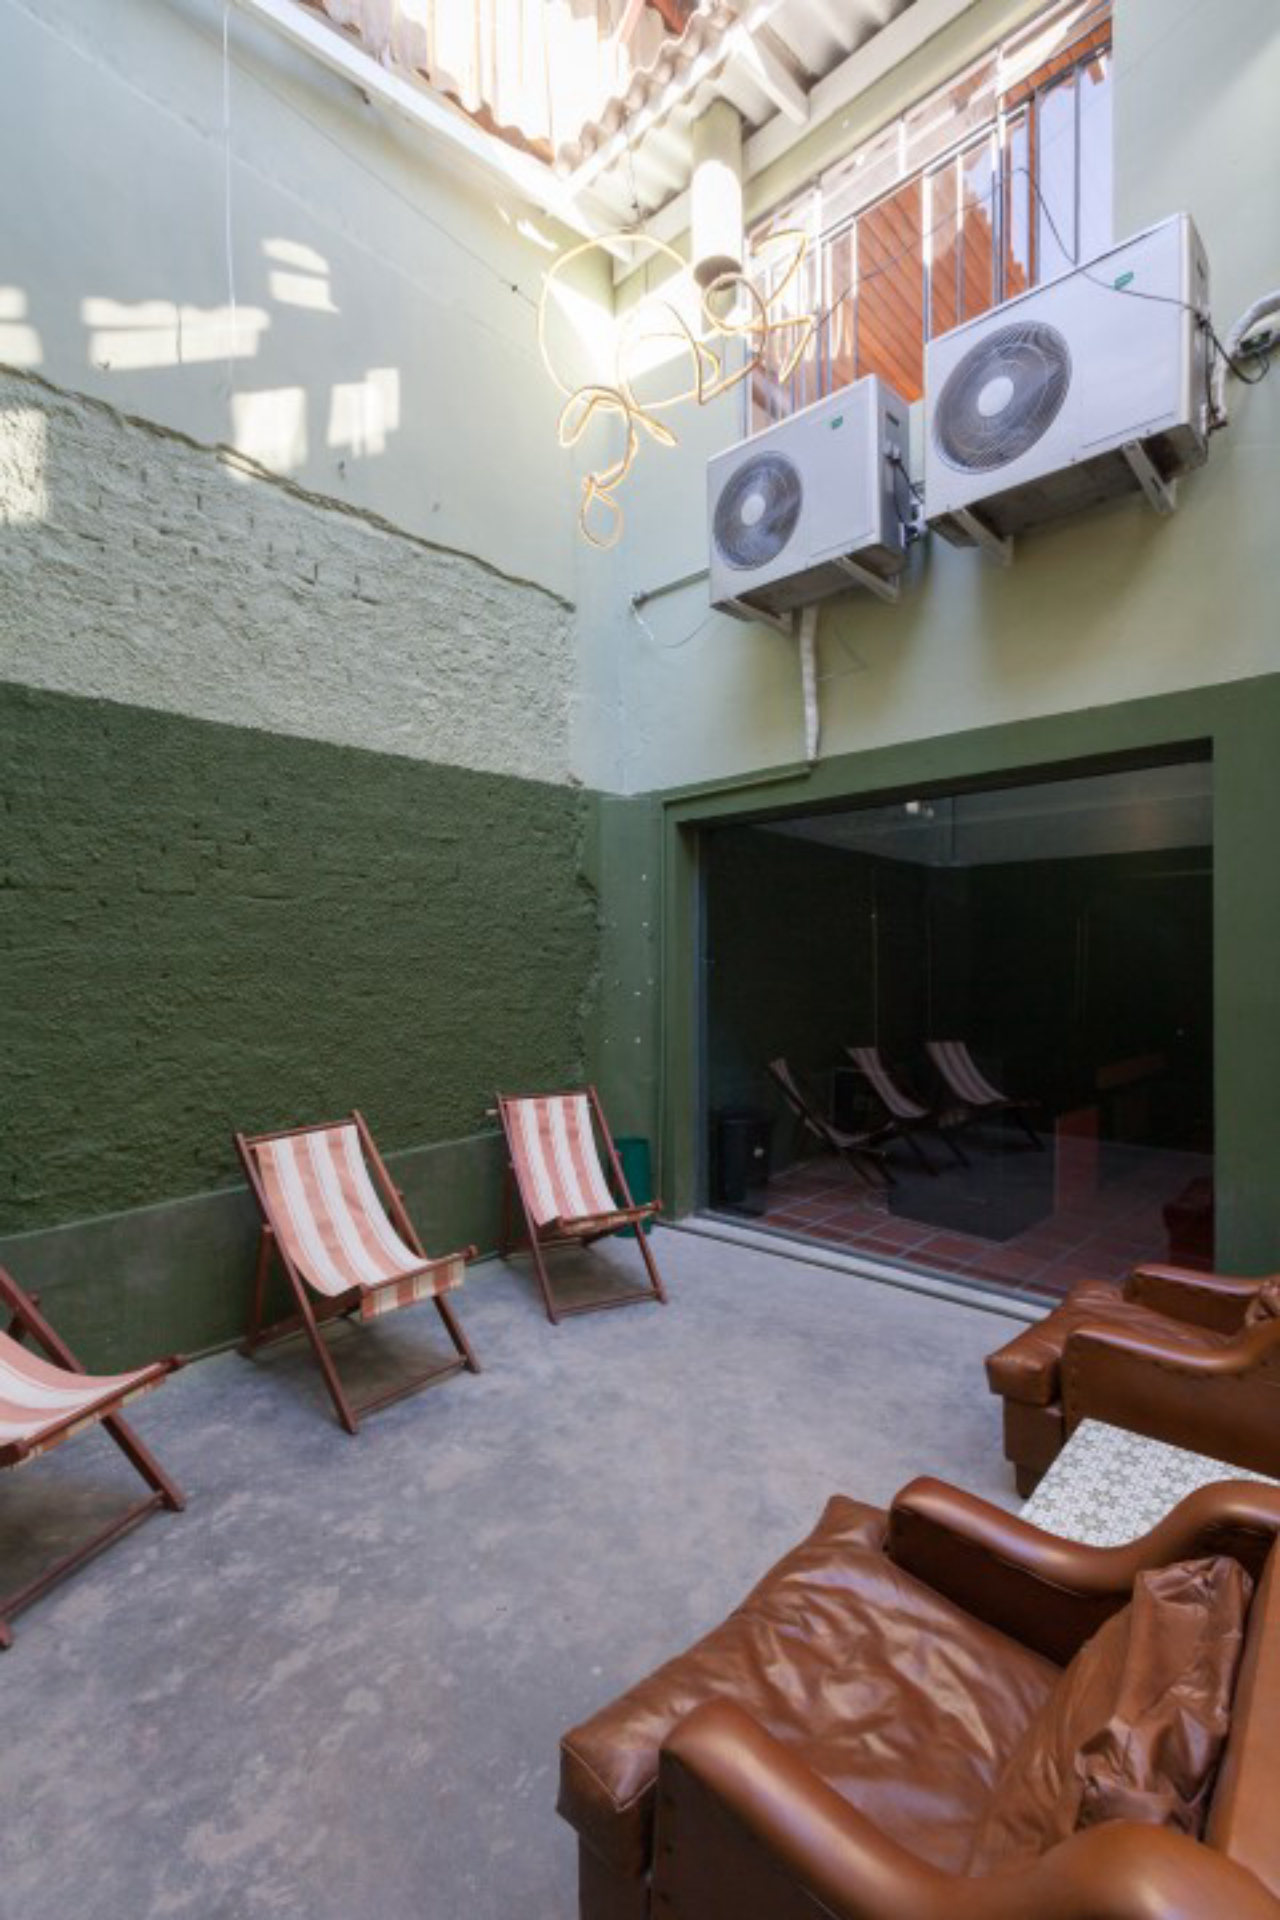 Fotos dos ambientes a fiom de retratar o projeto arquitetônico do Raposa Clube Recreativo. Local: Av. Campo Sales, 904 - Alto da Glória.